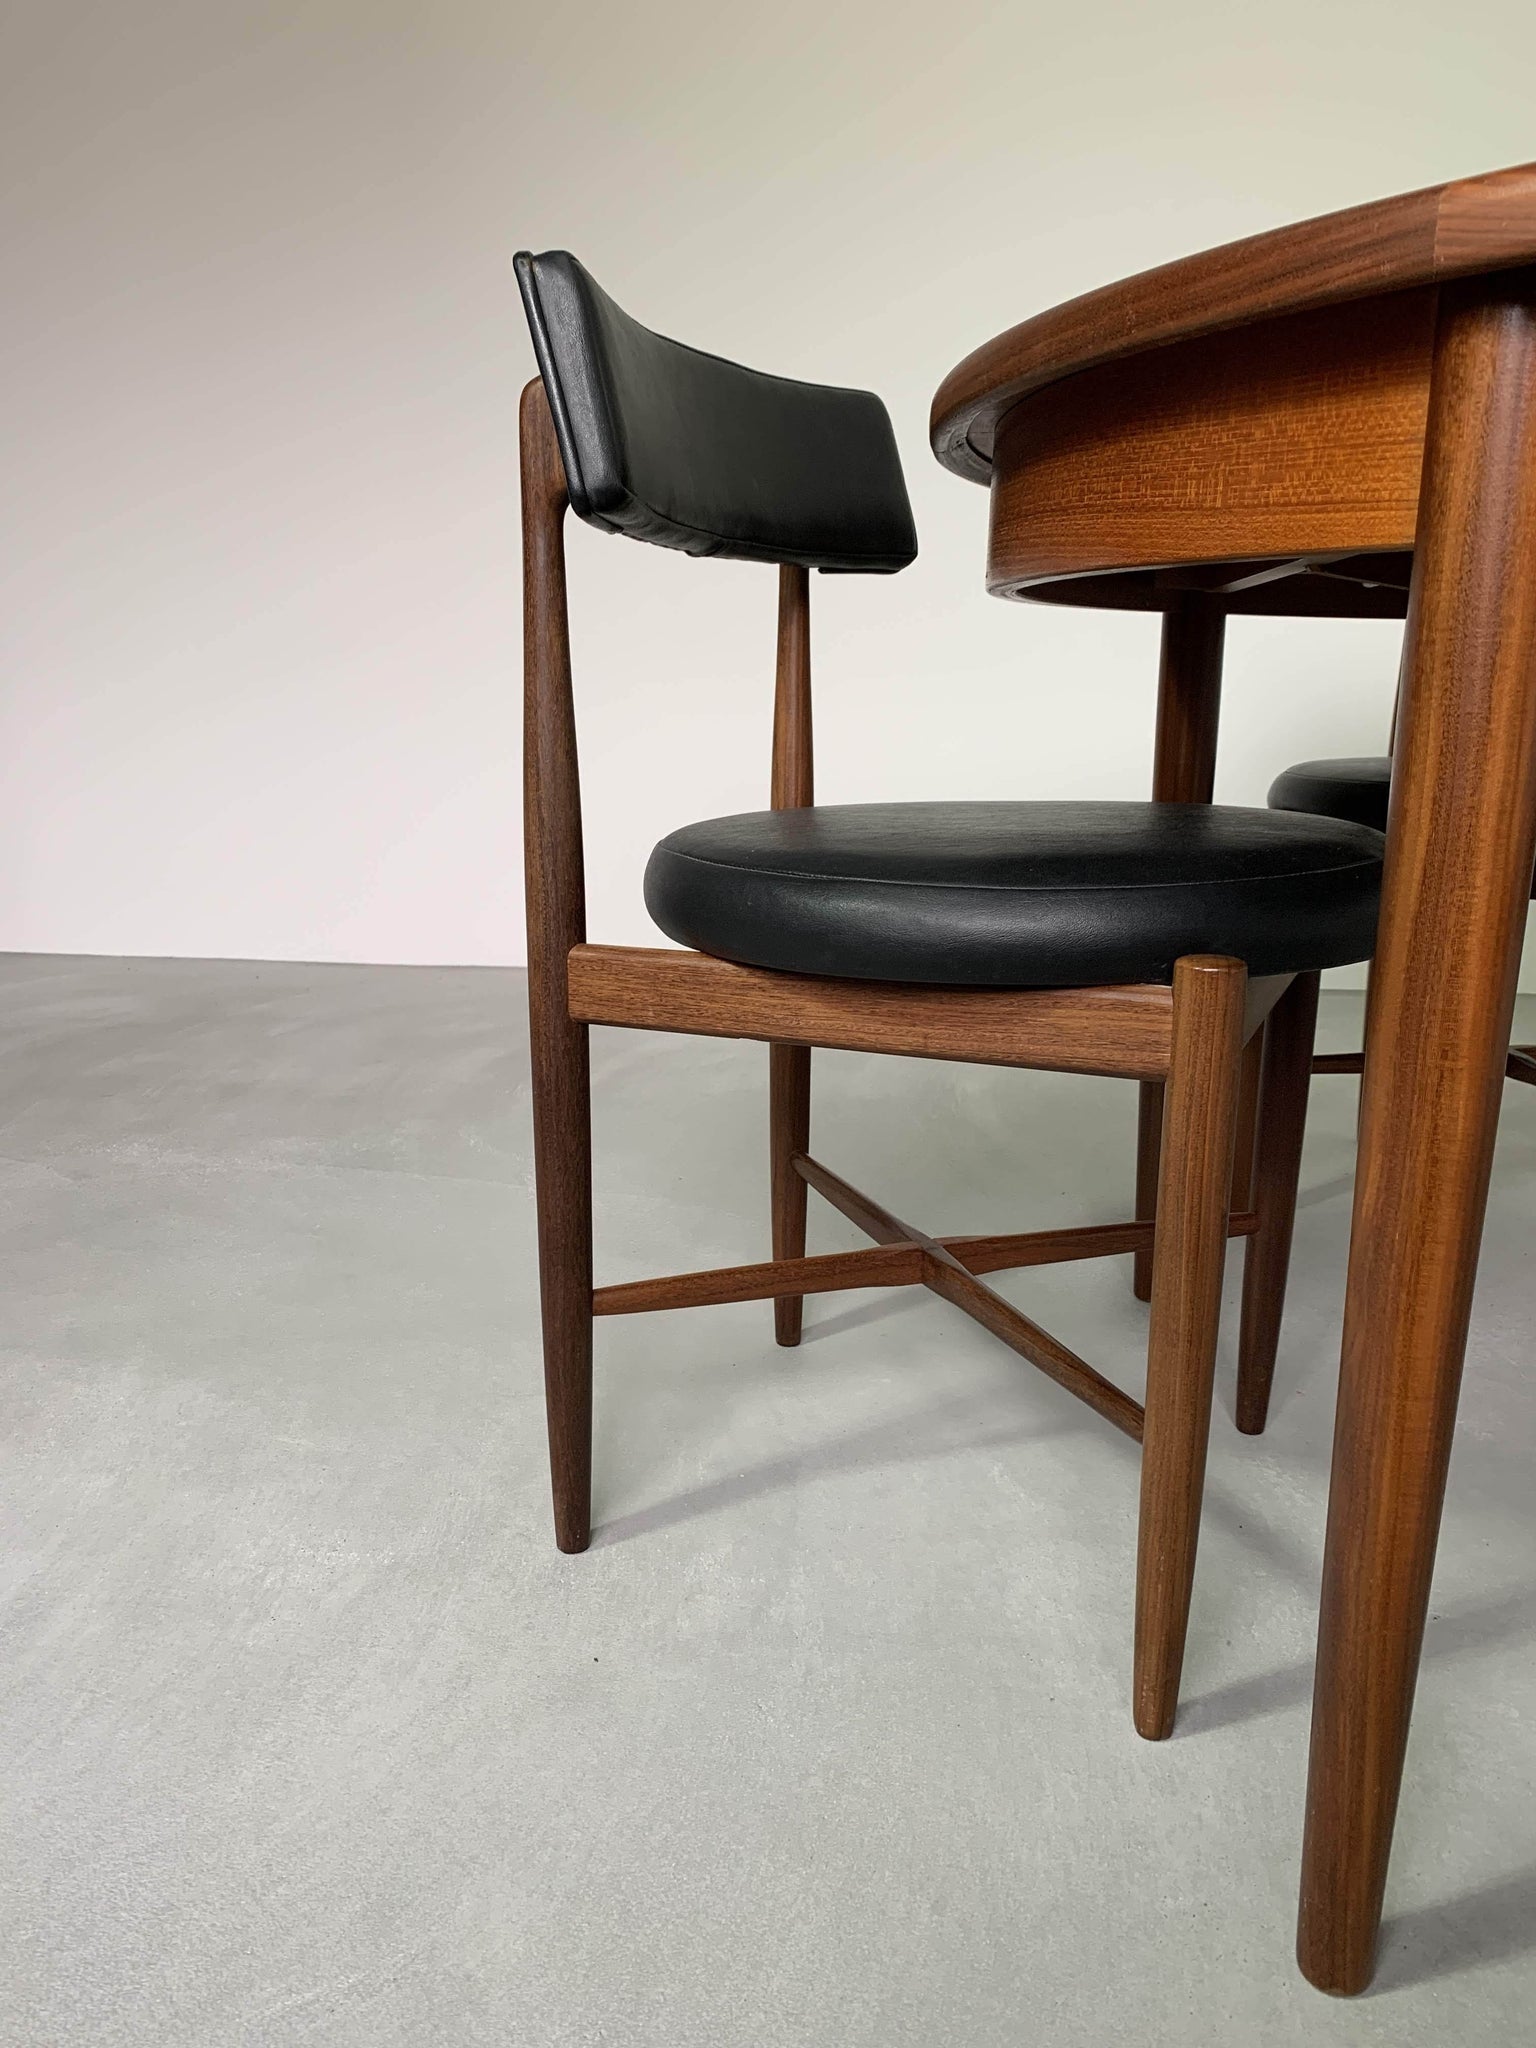 ジープラン フレスコ ダイニング チェア 4脚セット / g-plan fresco dining chairs set of 4 #0013